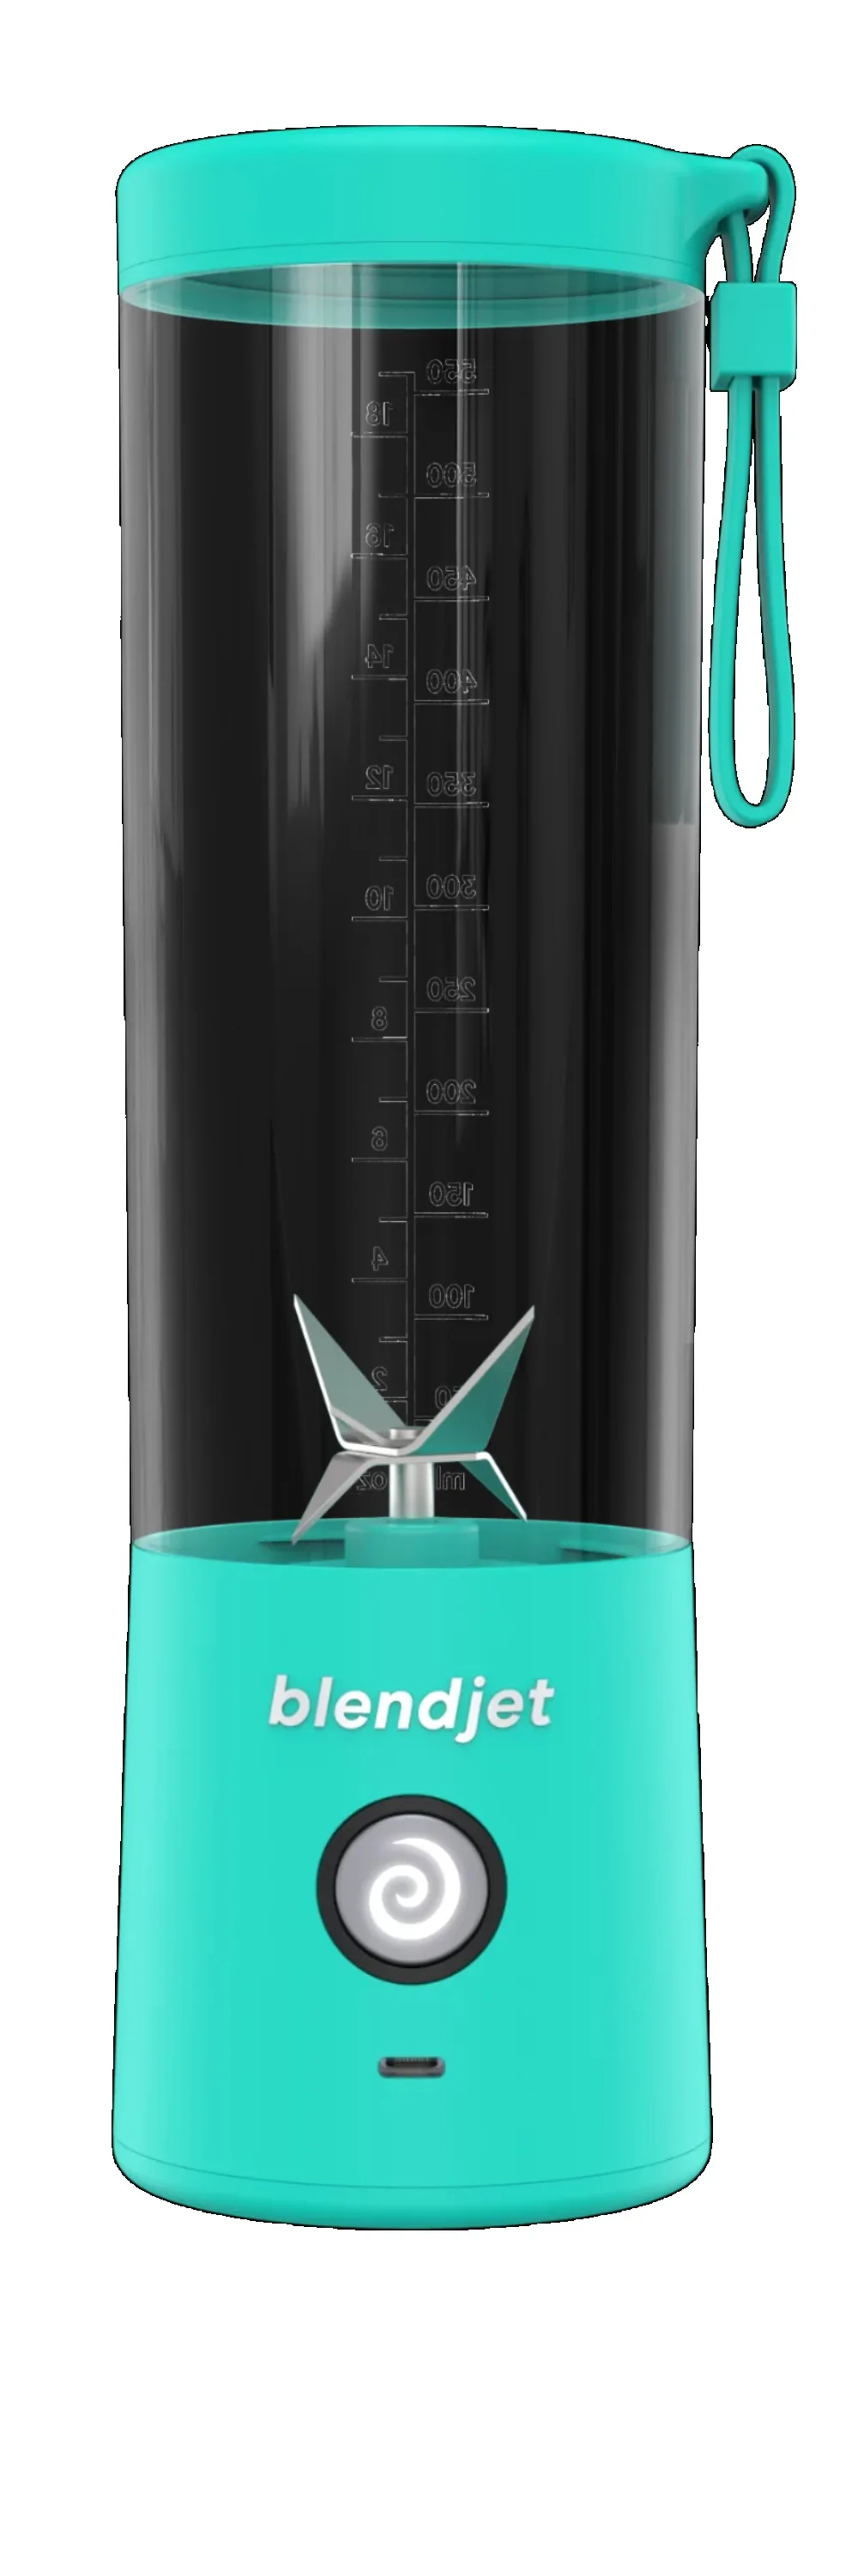 20 oz BlendJet 2, the Original Portable Blender.